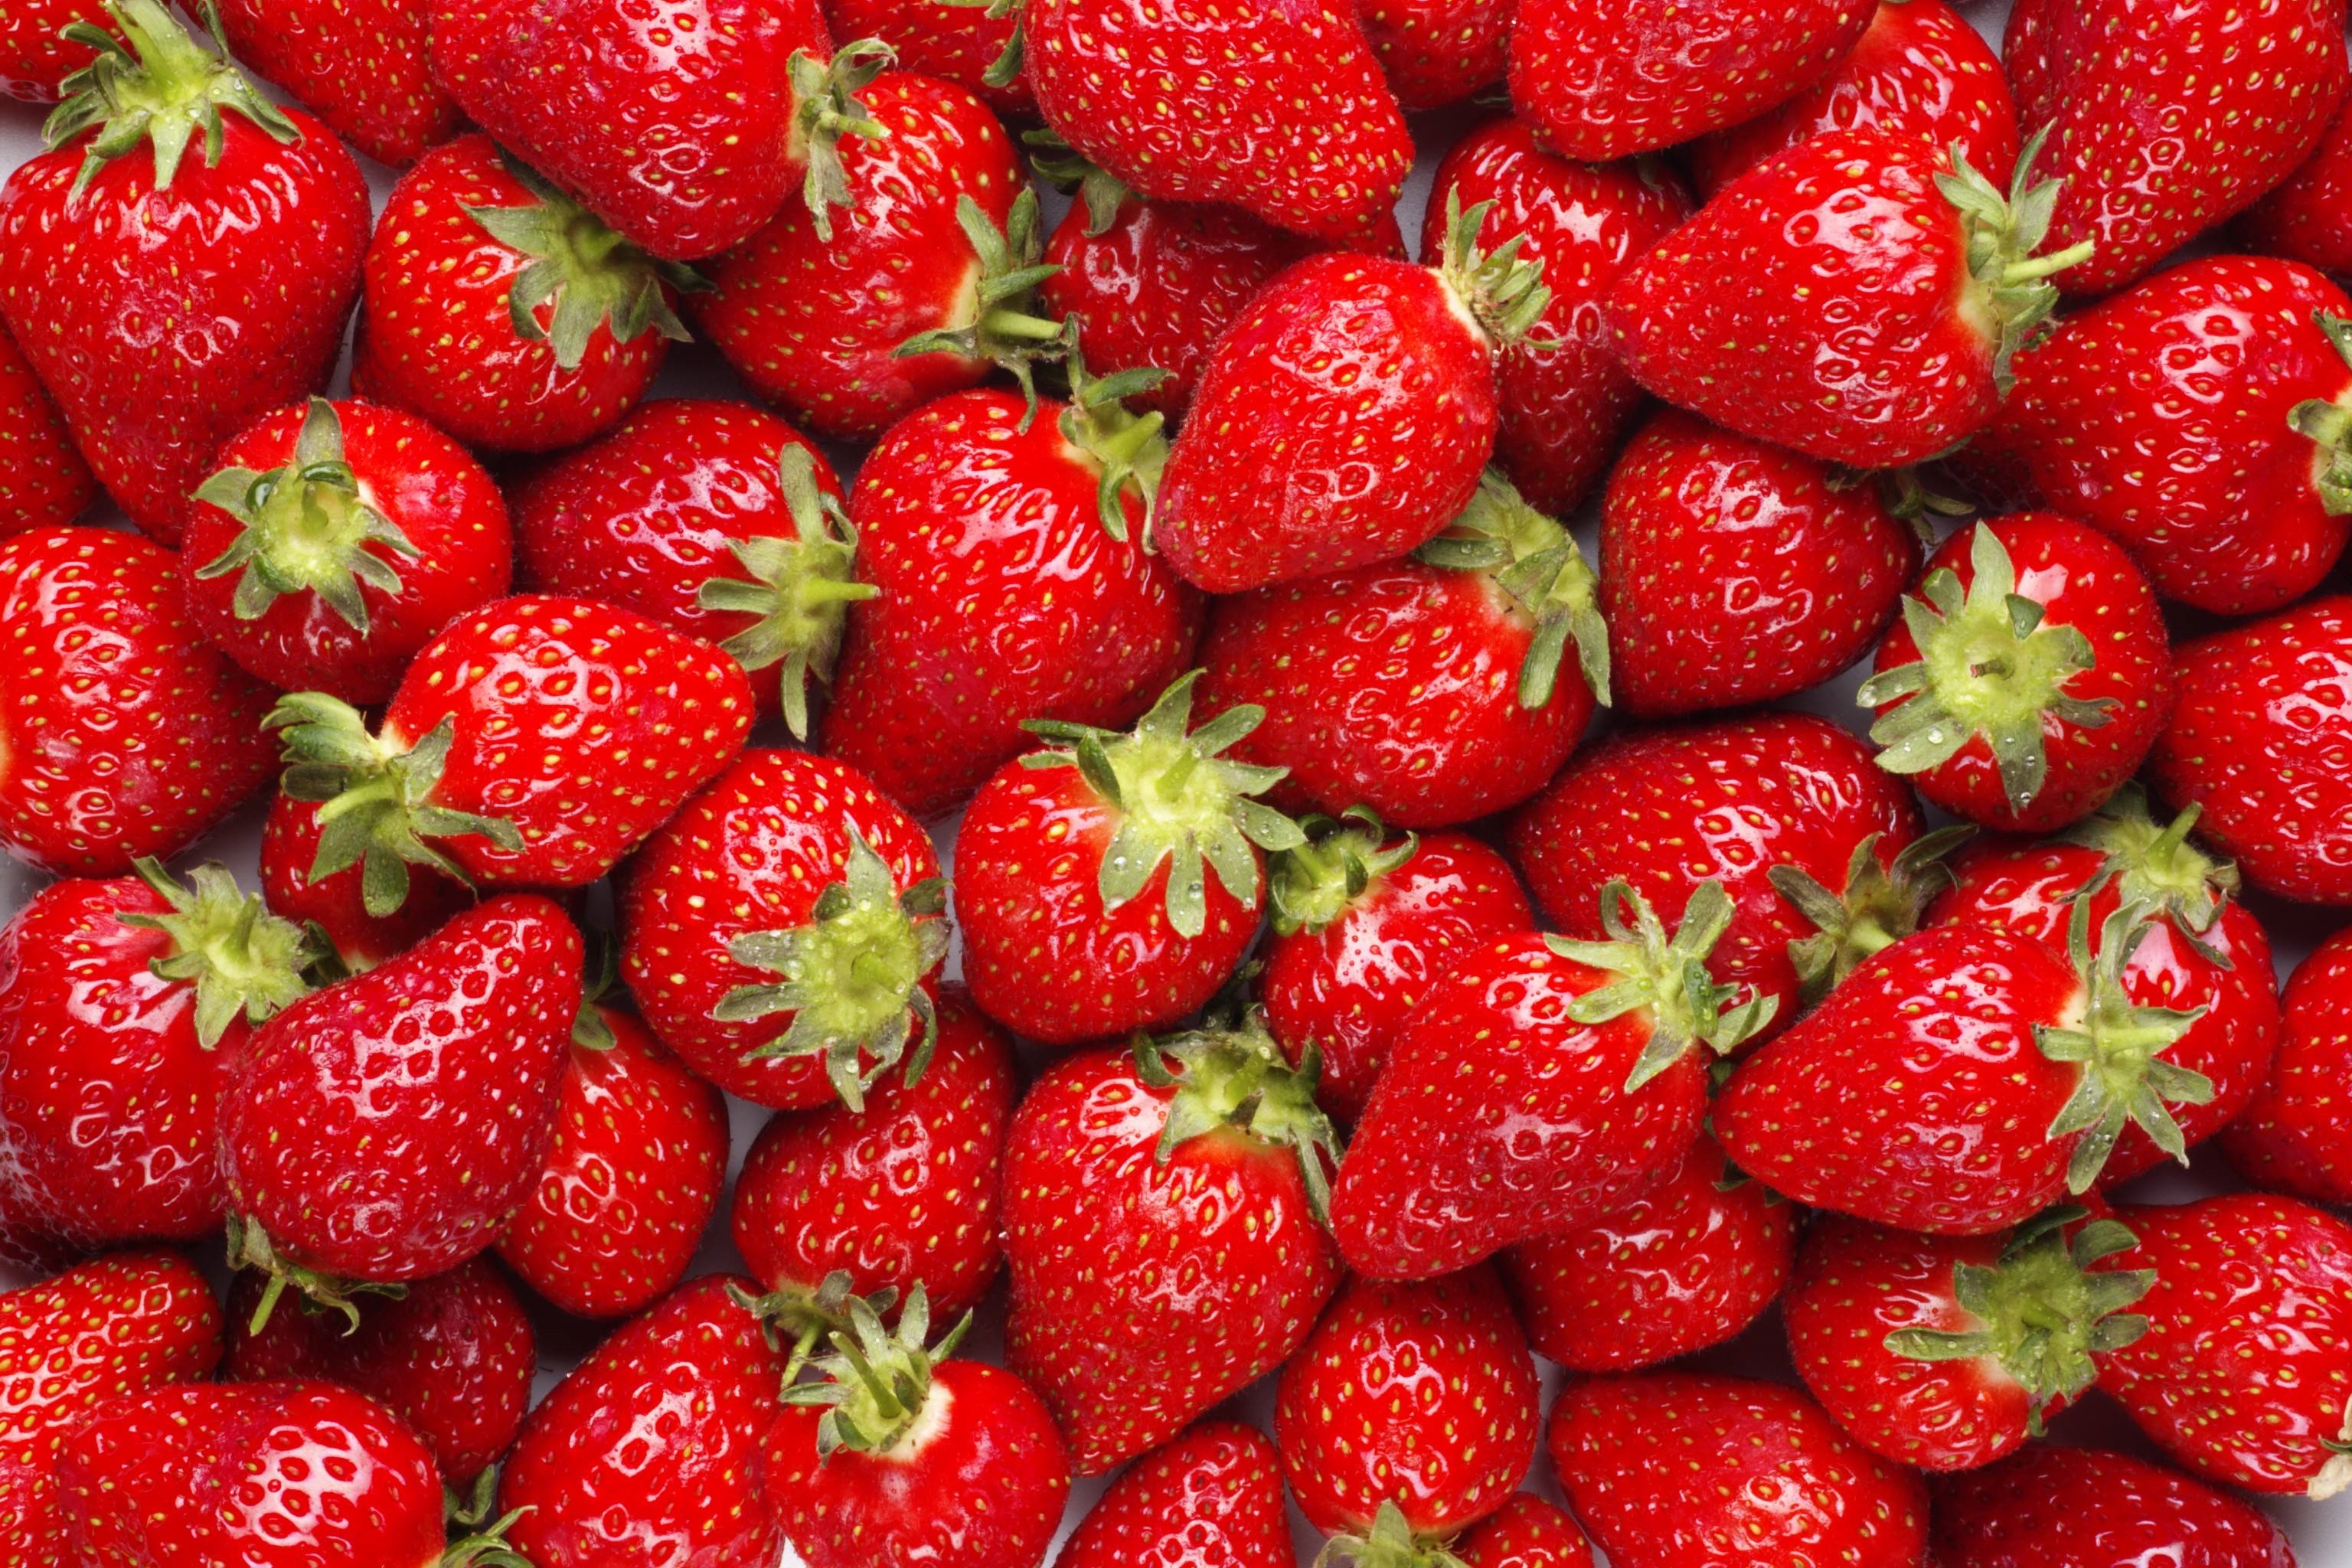 Strawberryy20 Strawberry